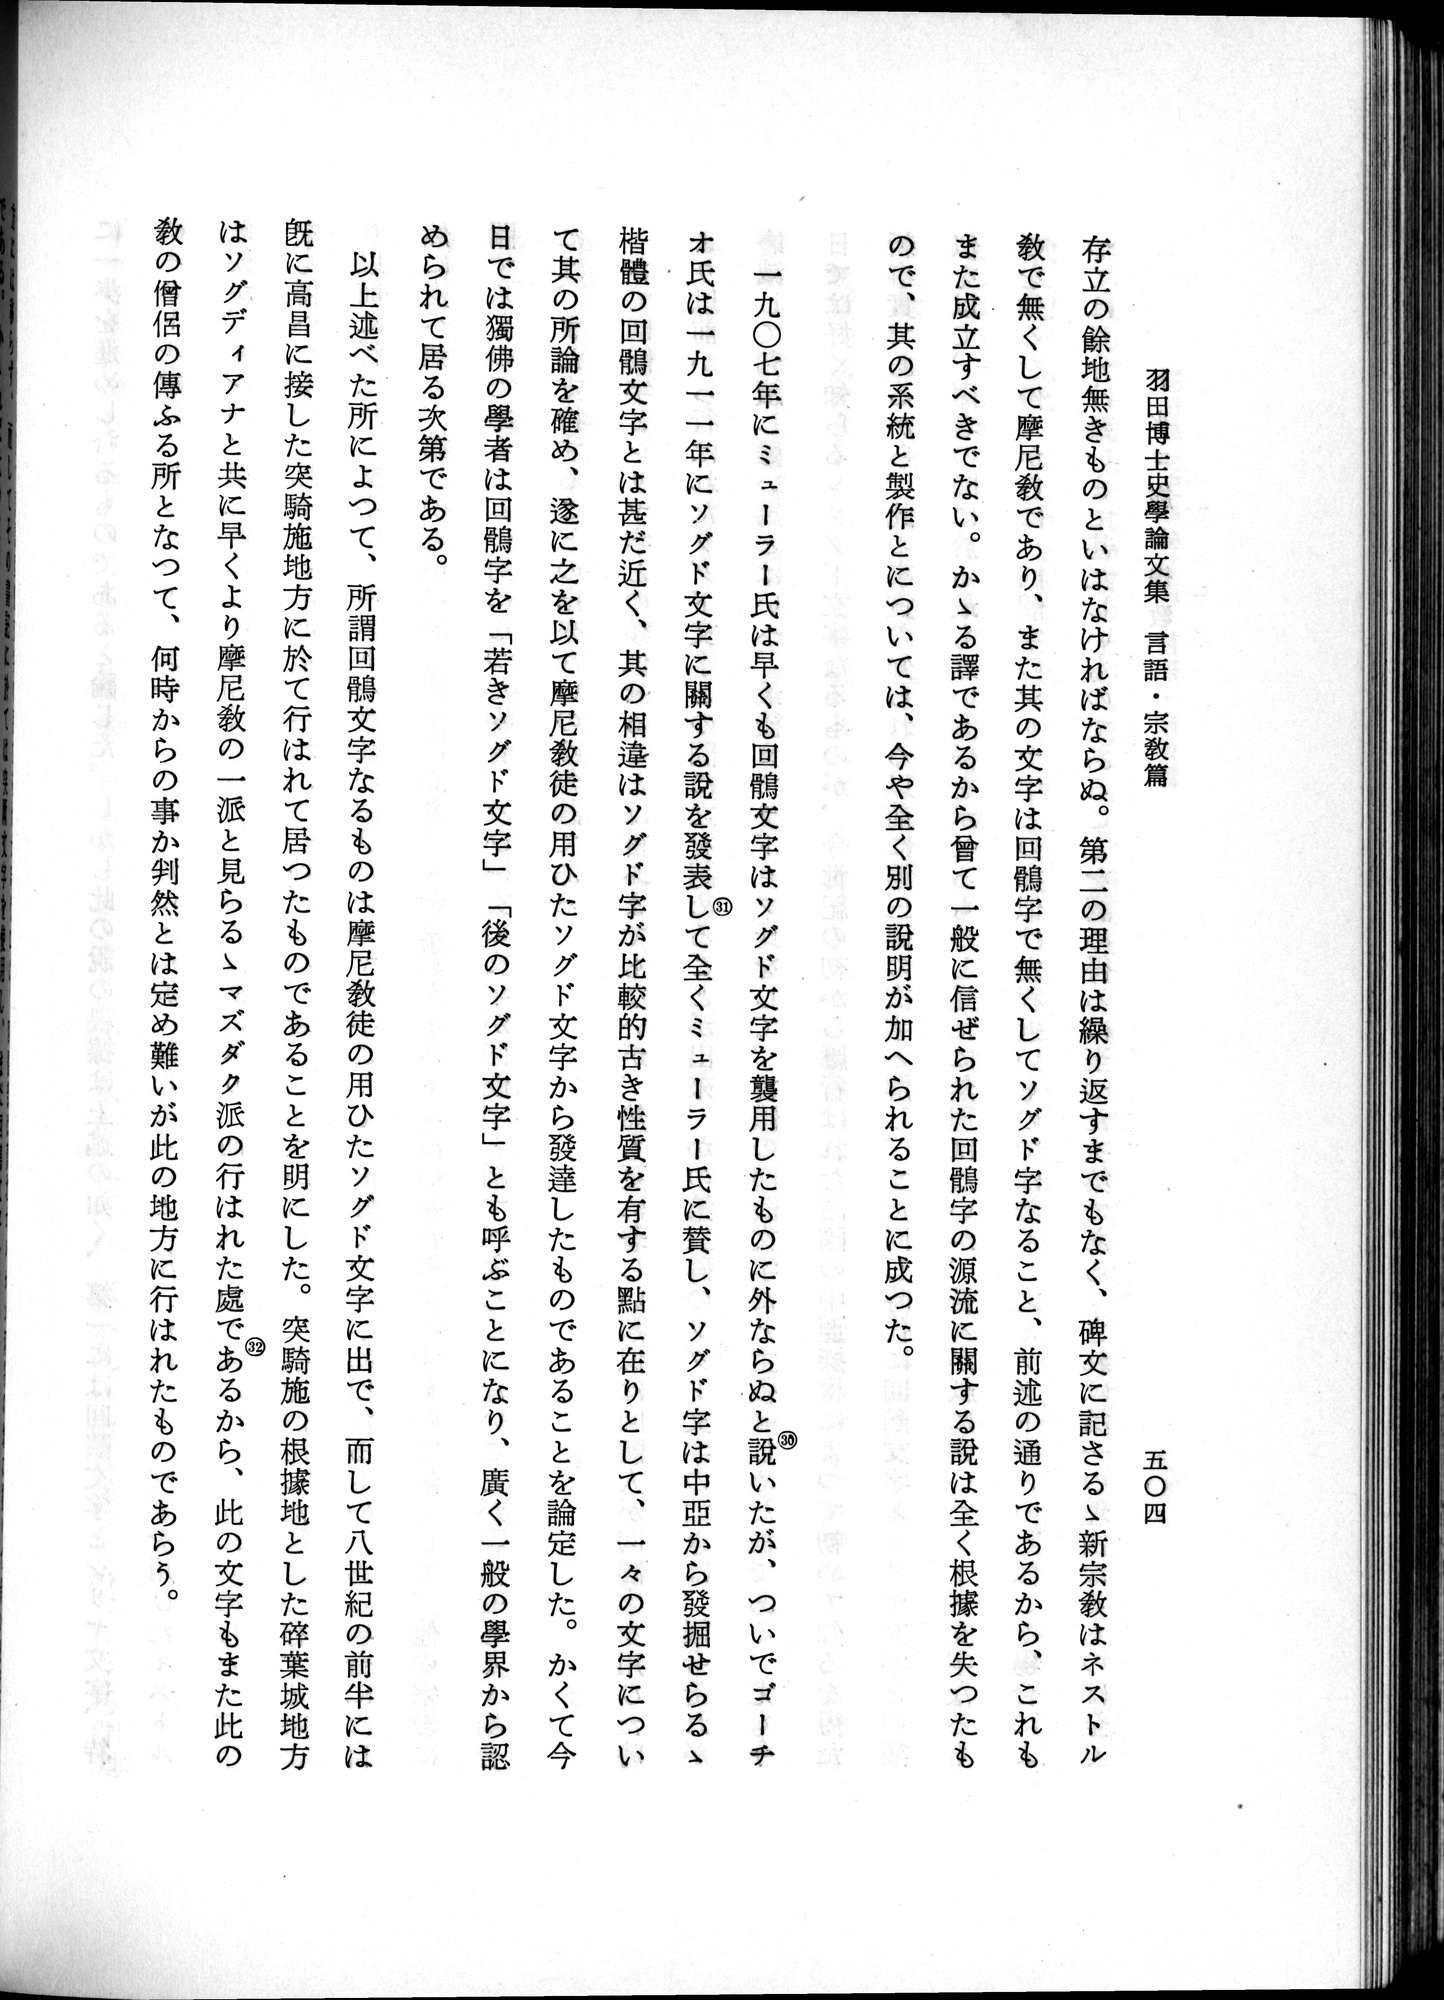 羽田博士史学論文集 : vol.2 / Page 566 (Grayscale High Resolution Image)